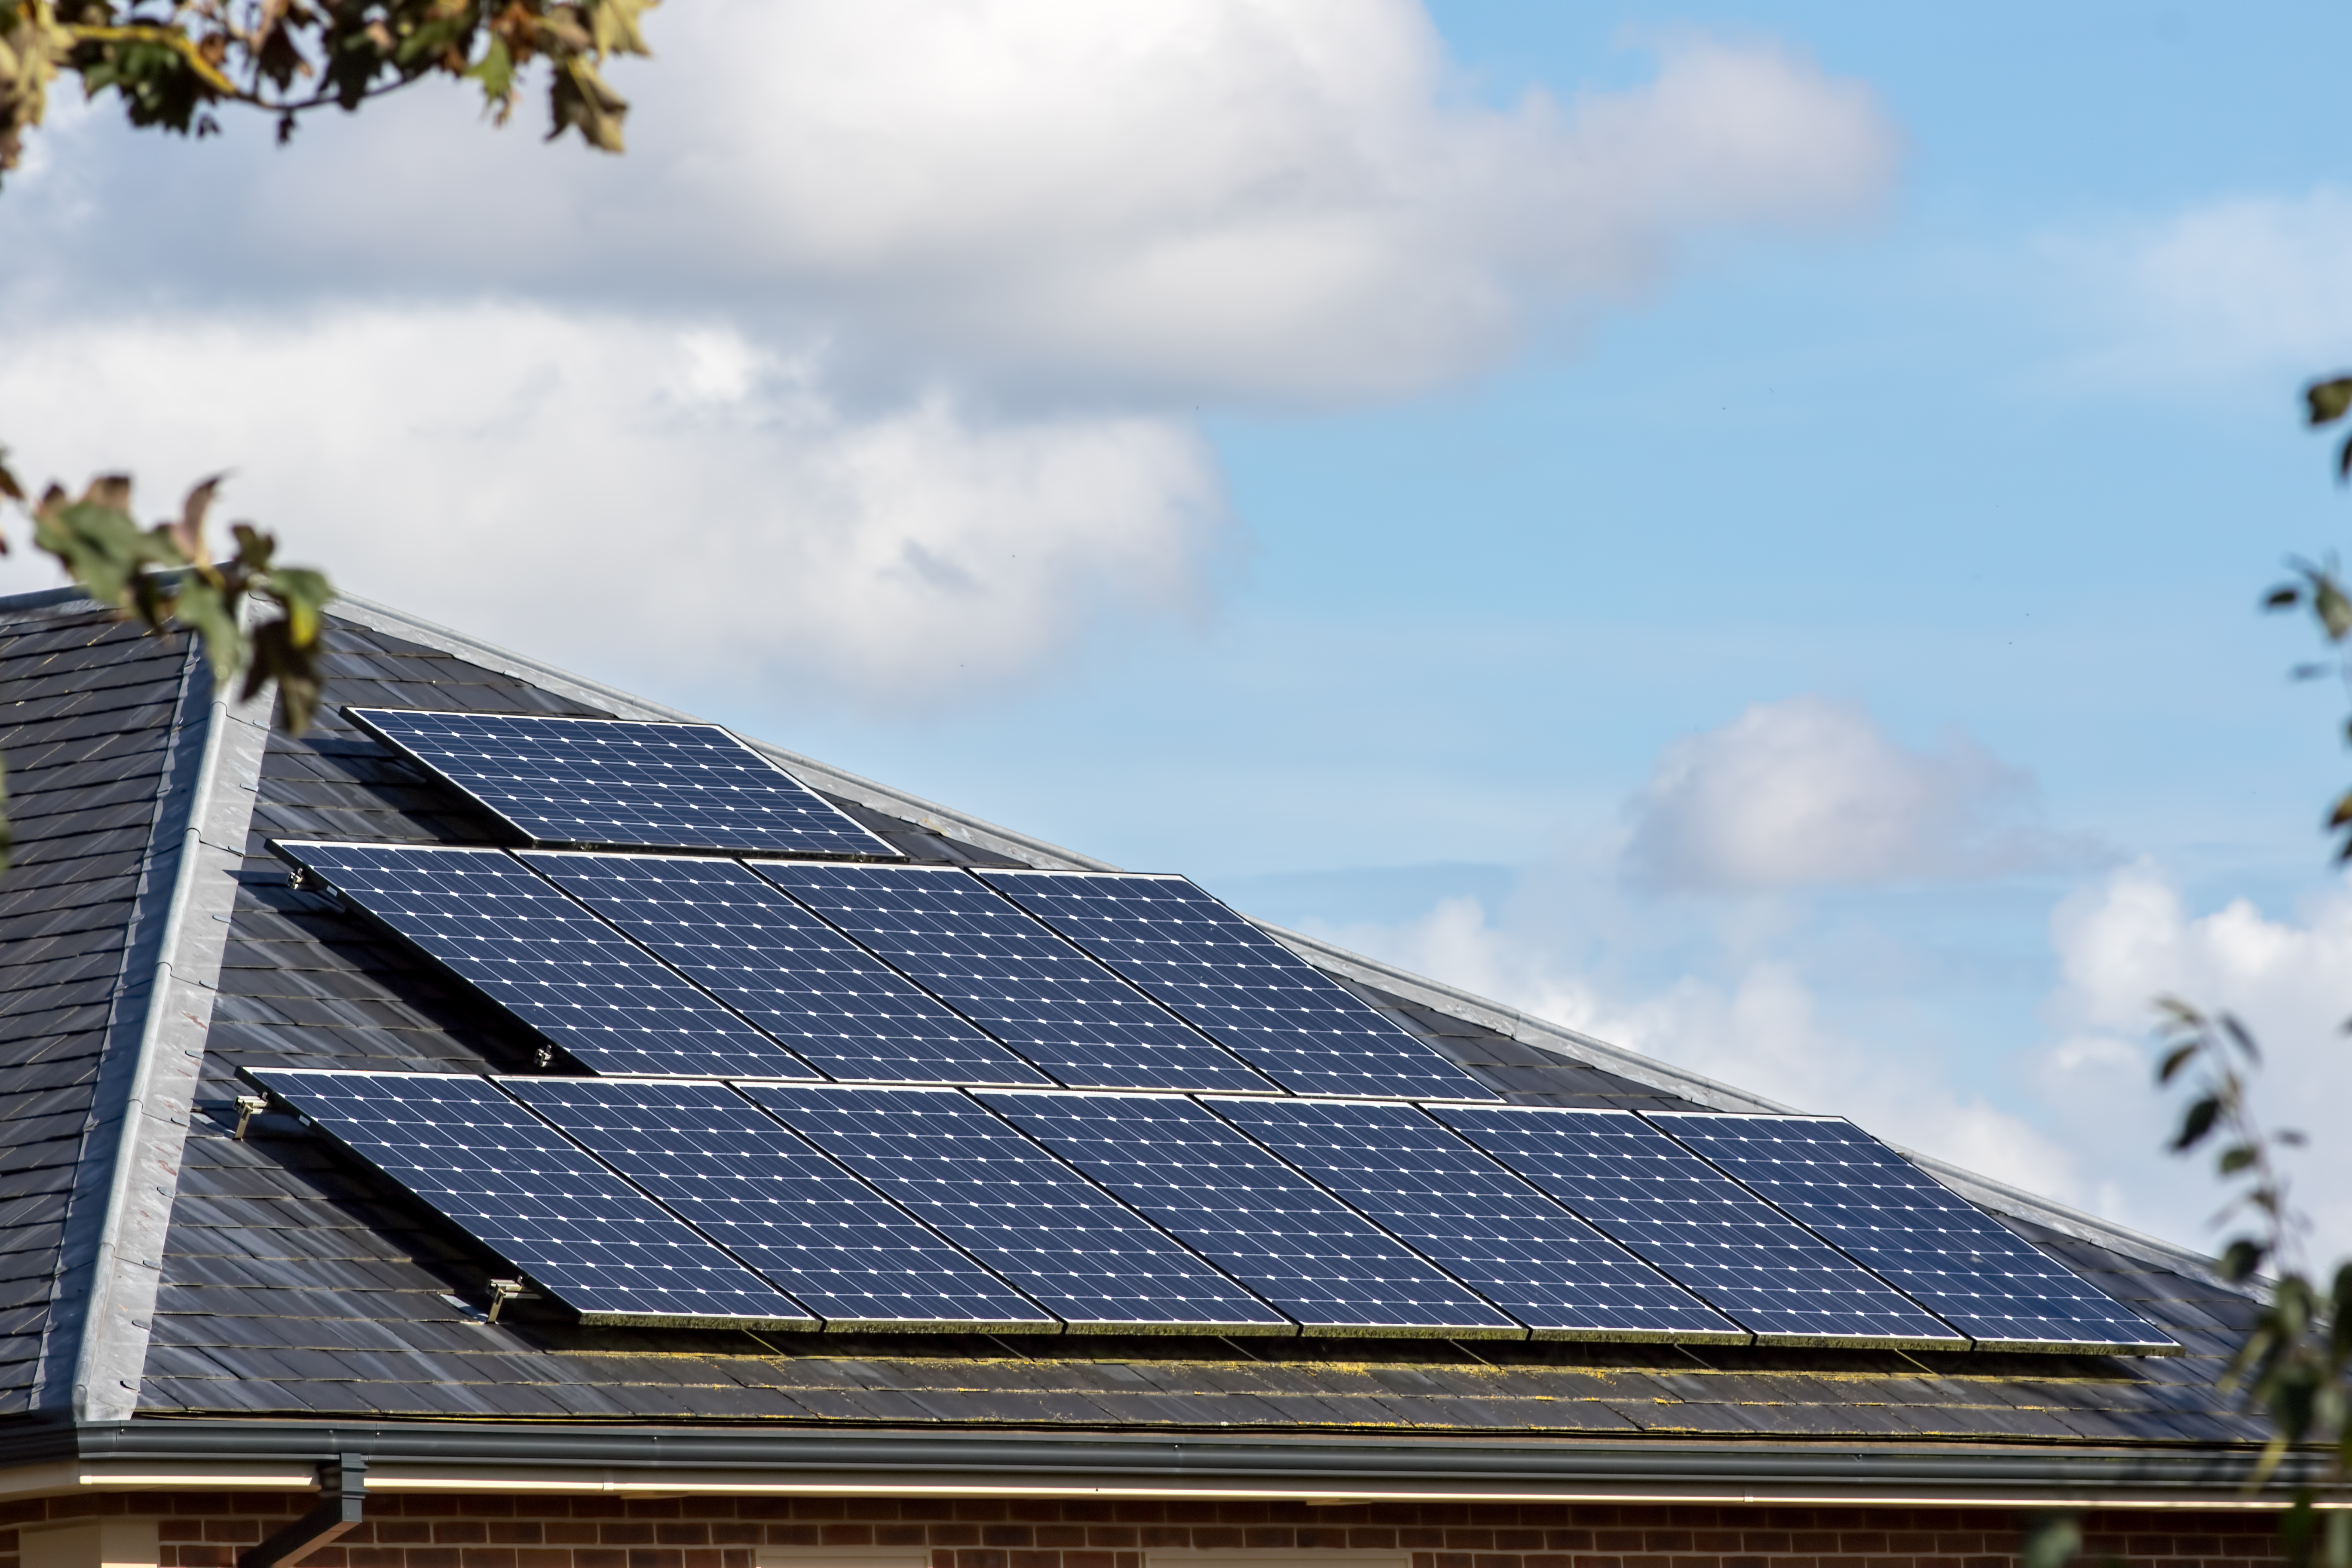 Solar panels on slate tiled roof of modern house